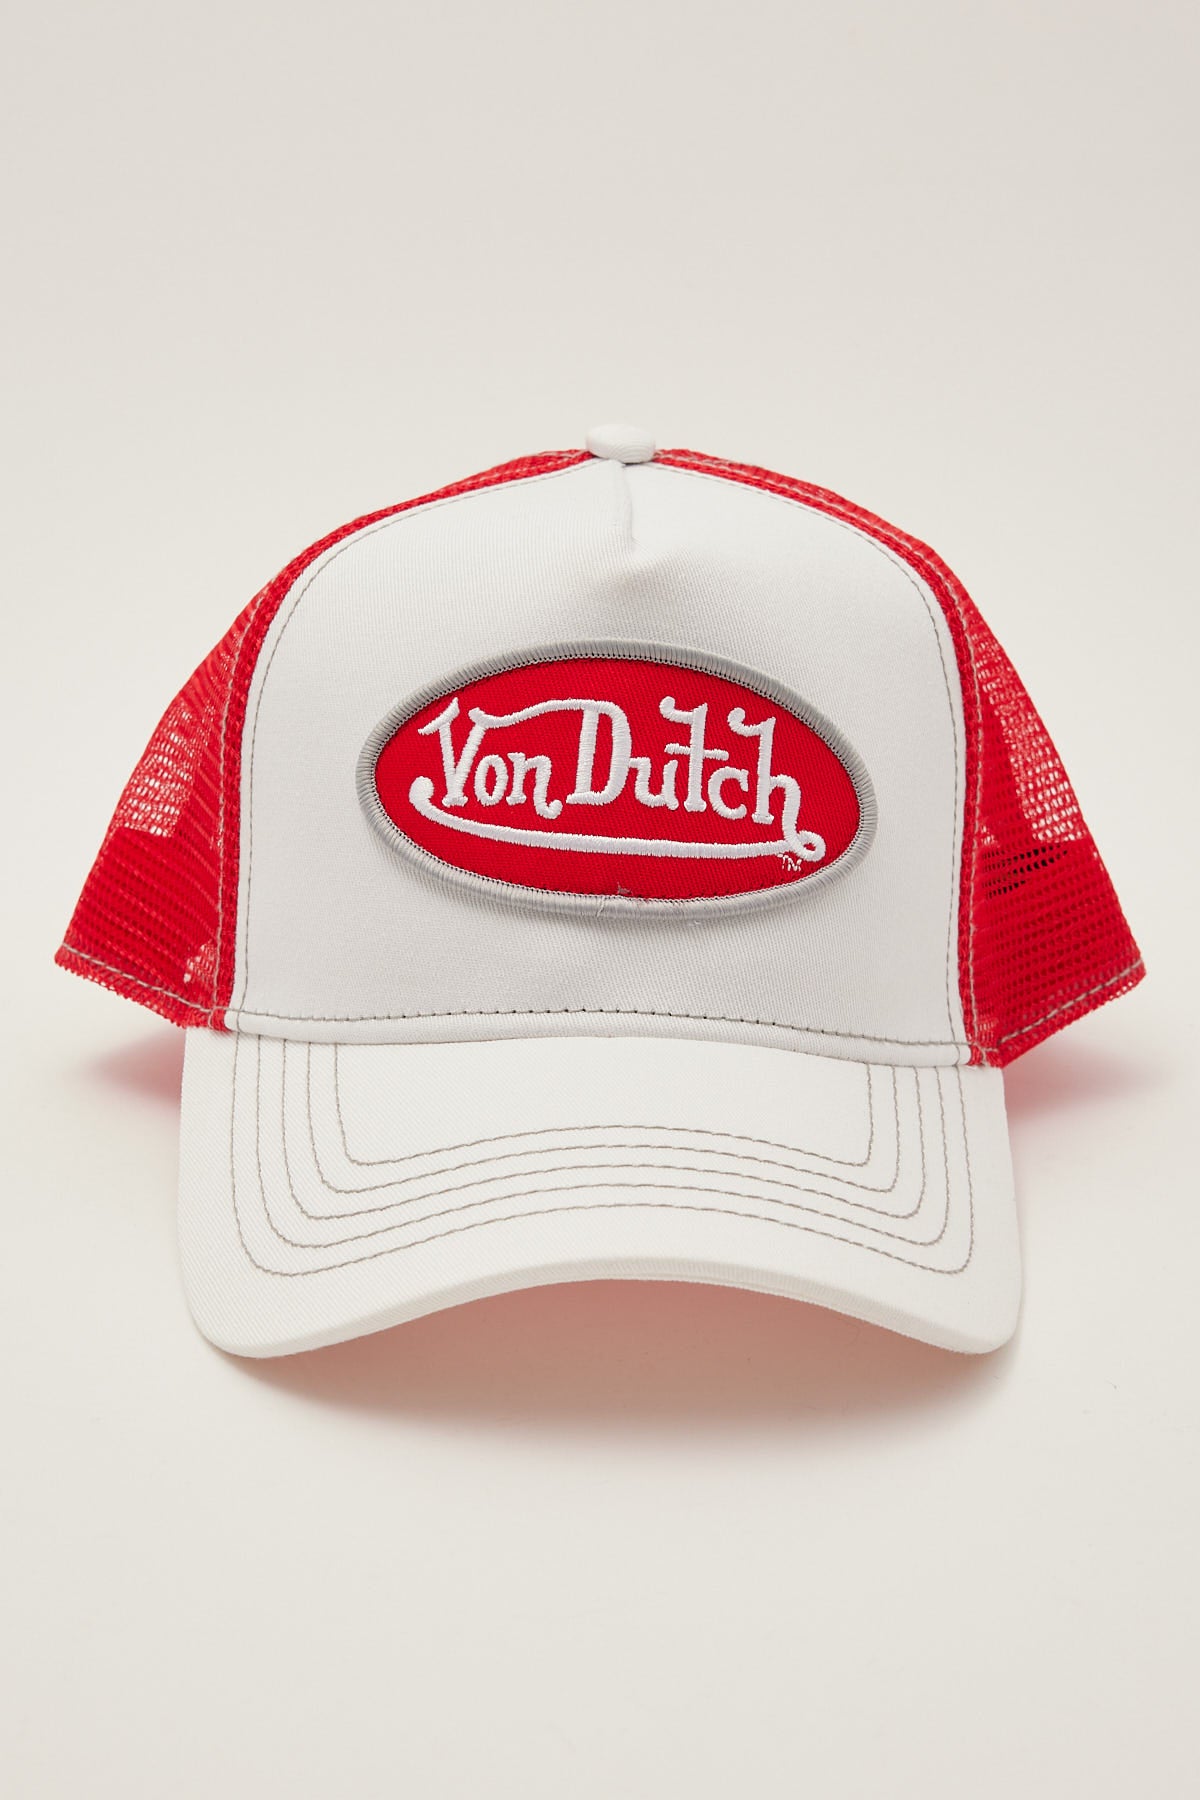 Von Dutch White with Red Trucker White/Red